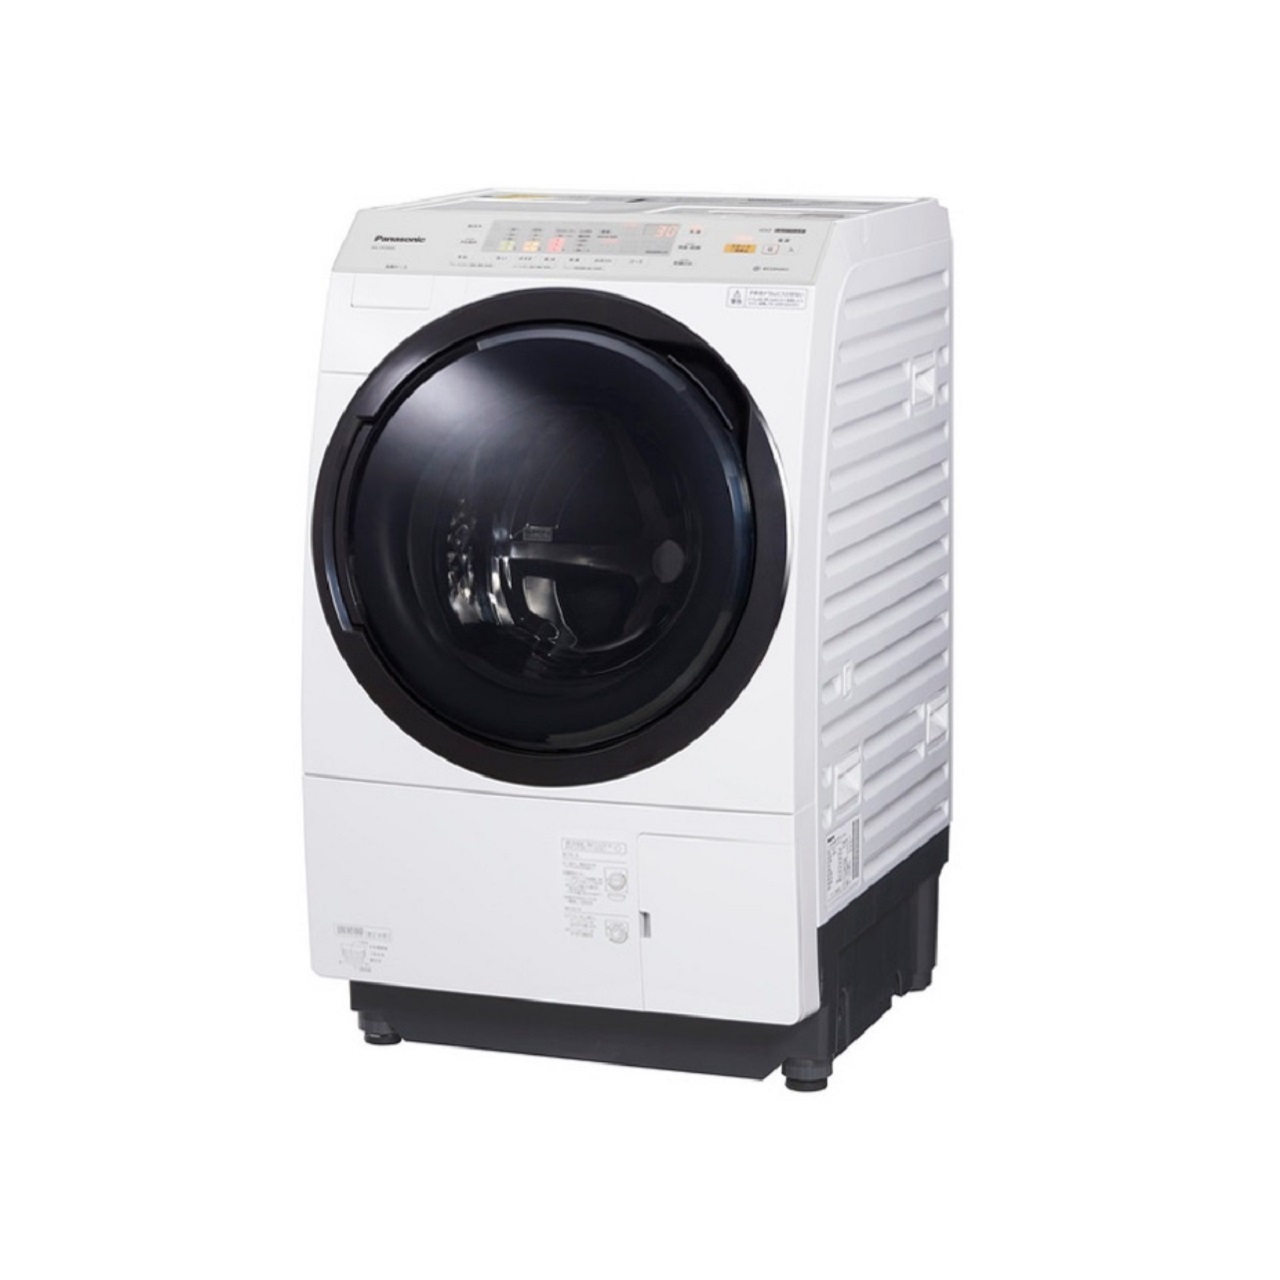 パナソニックNA-VX3900Lななめドラム洗濯乾燥機